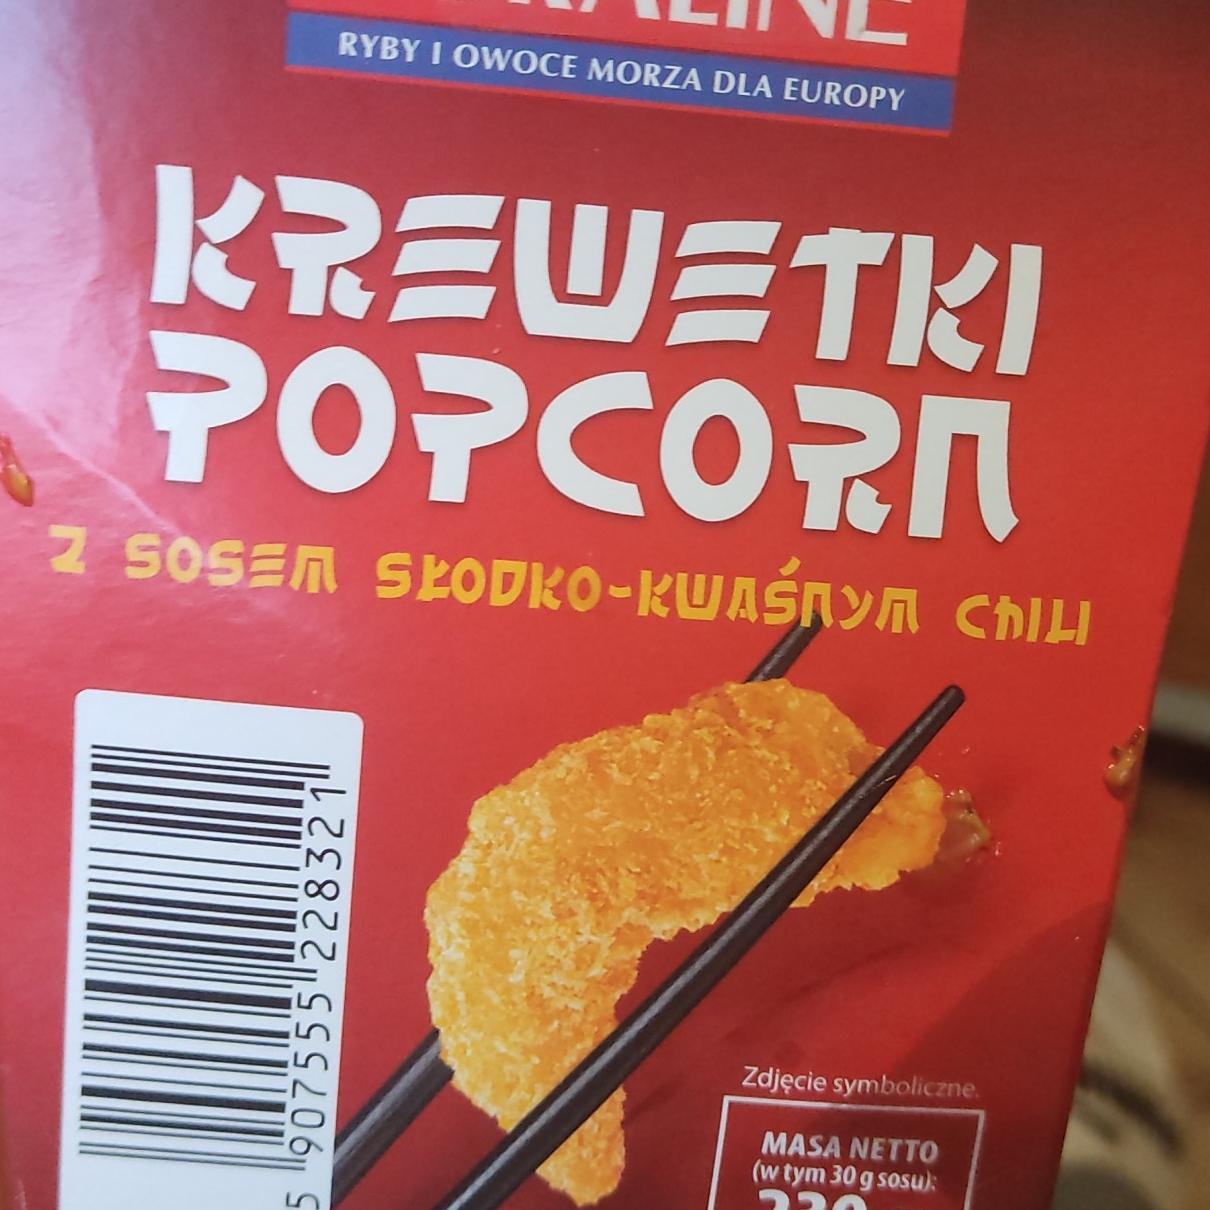 Zdjęcia - Krewetki popcorn z sosem słodko-kwaśnym chili Abramczyk